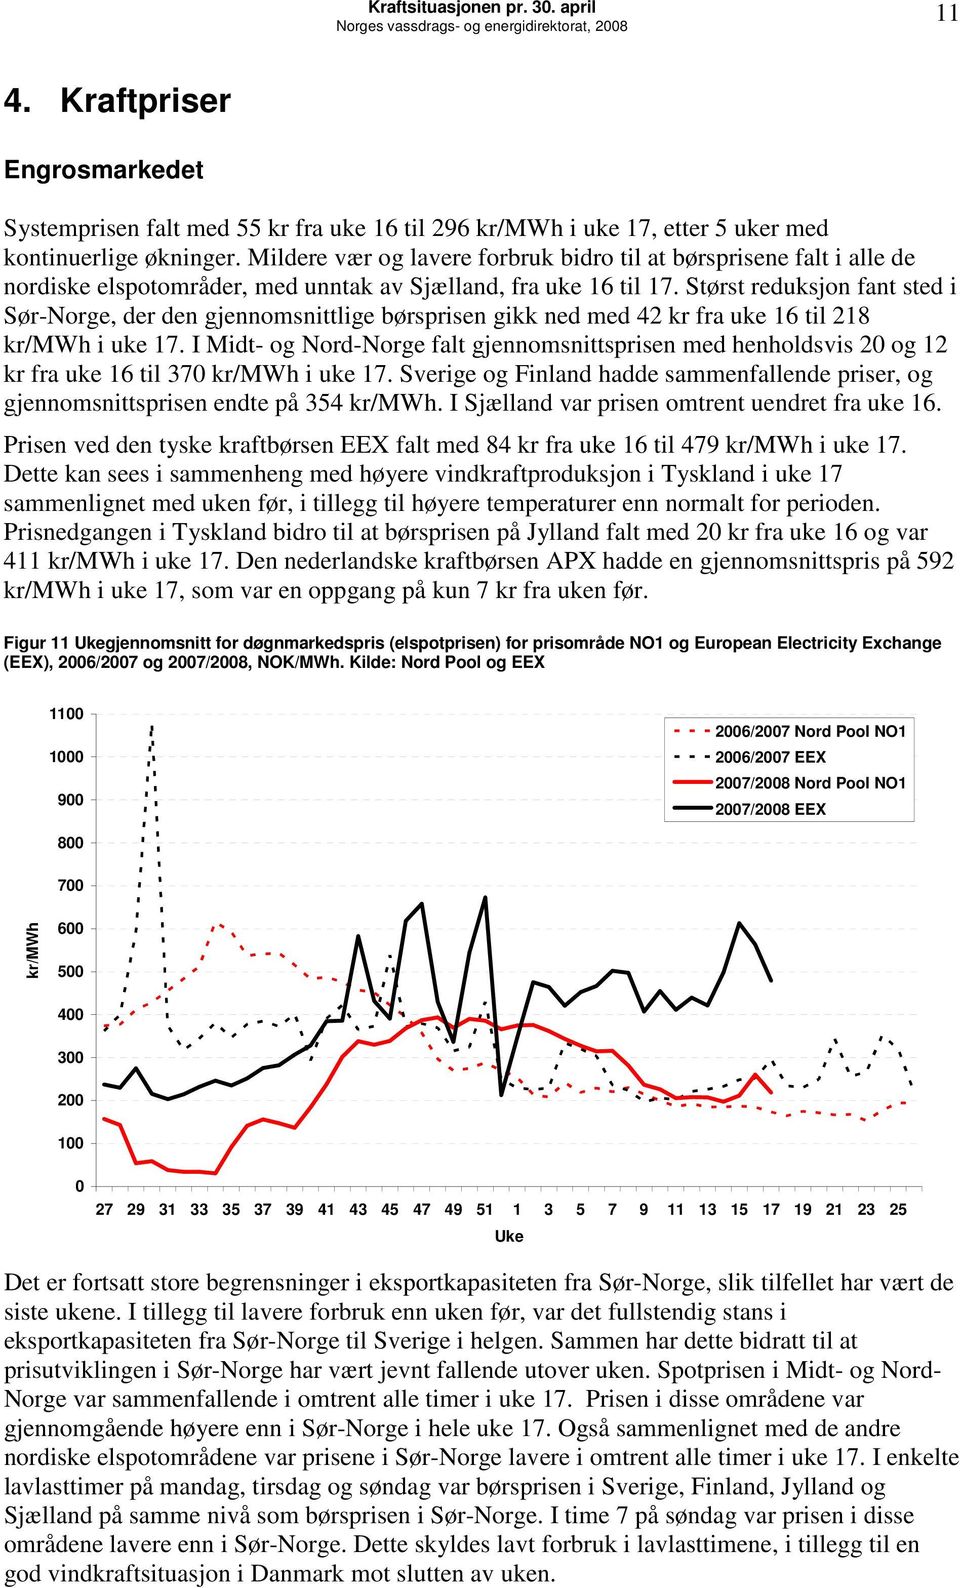 Mildere vær og lavere forbruk bidro til at børsprisene falt i alle de nordiske elspotområder, med unntak av Sjælland, fra uke 16 til 17.